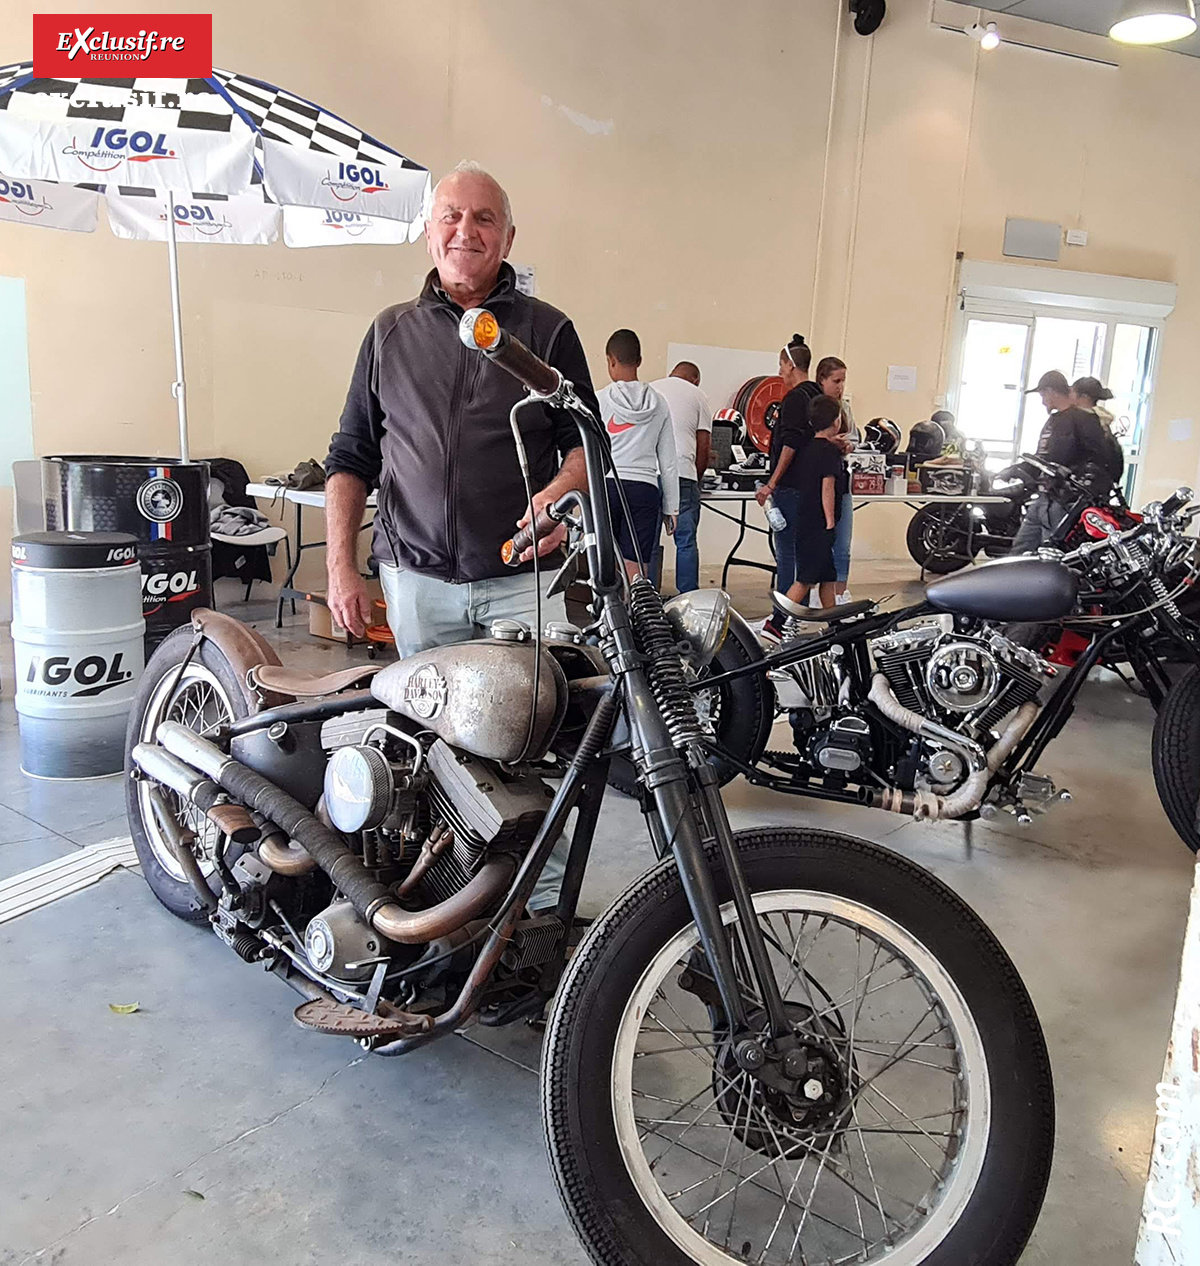 Jean-Michel a jeté son dévolu sur cette Harley Davidson, moto de légende